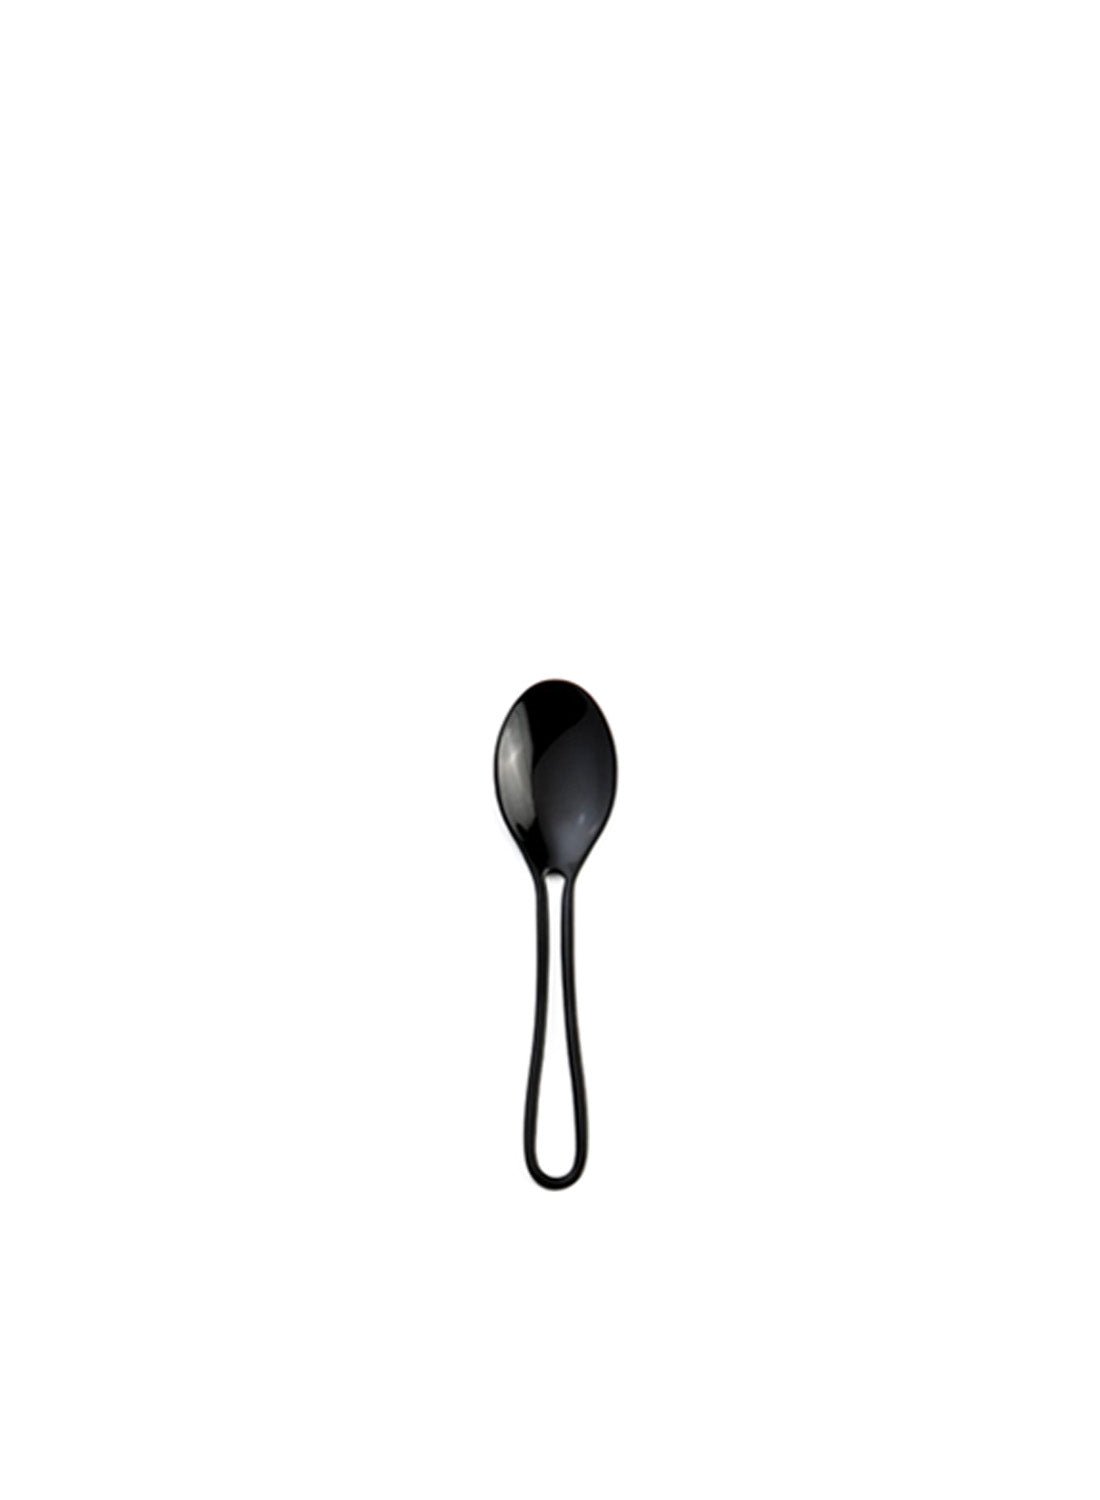 Maarten Baptist Outline Espresso Spoon, black